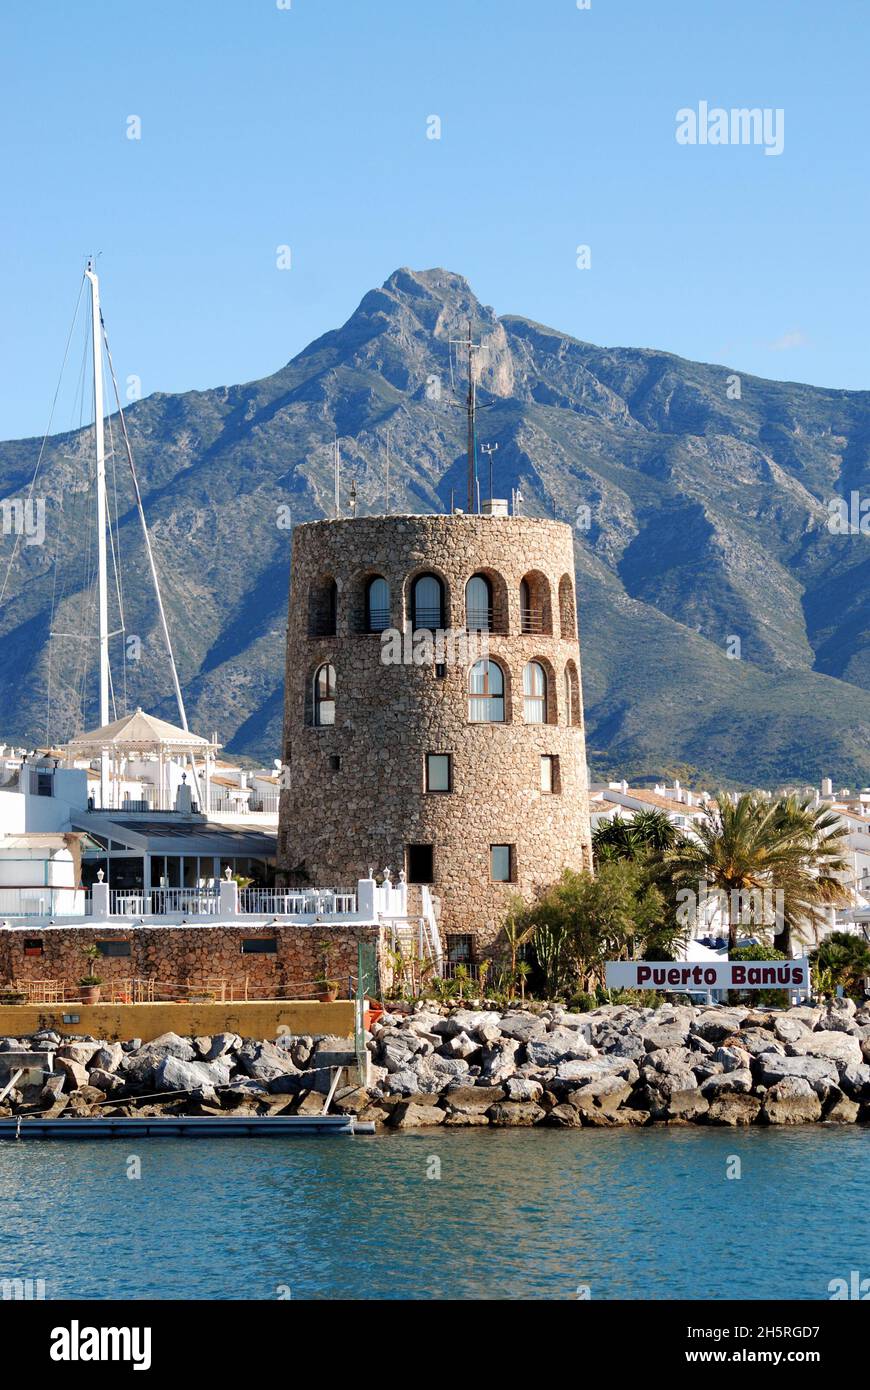 Vista della zona portuale, Puerto Banus, Marbella, Costa del Sol, Provincia di Malaga, Andalucia, Spagna. Foto Stock